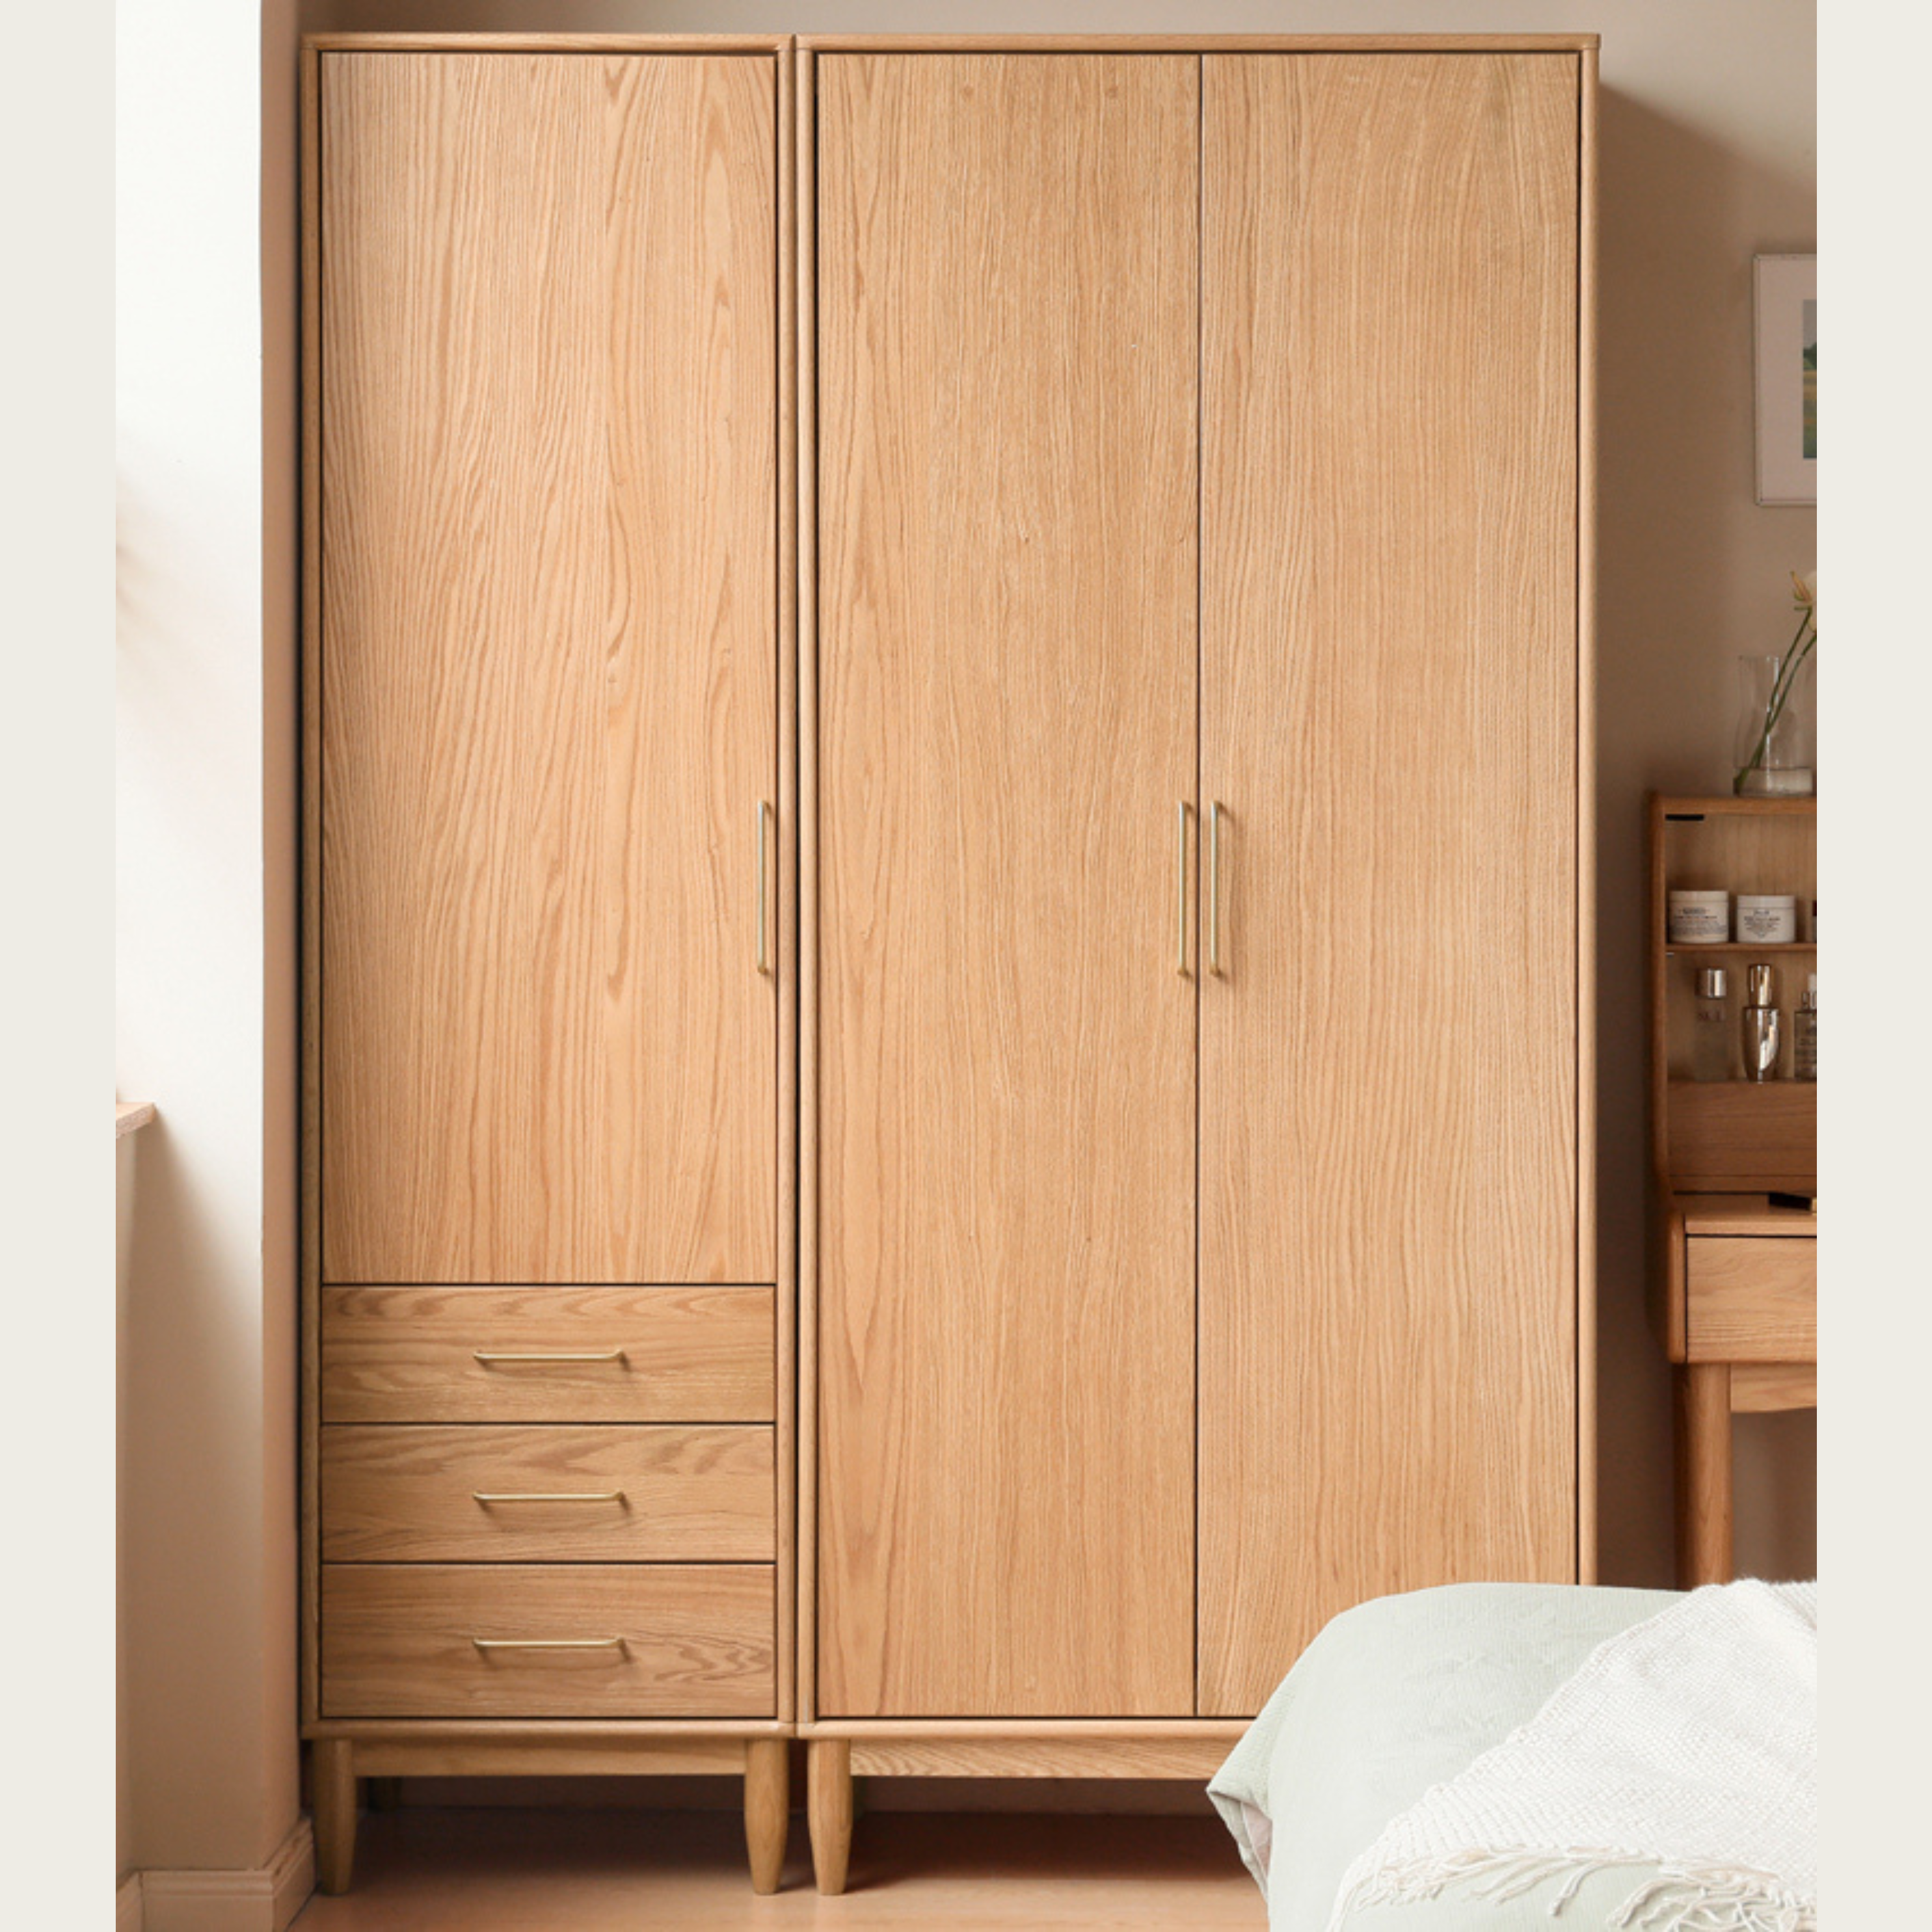 Oak solid wood double door wardrobe+